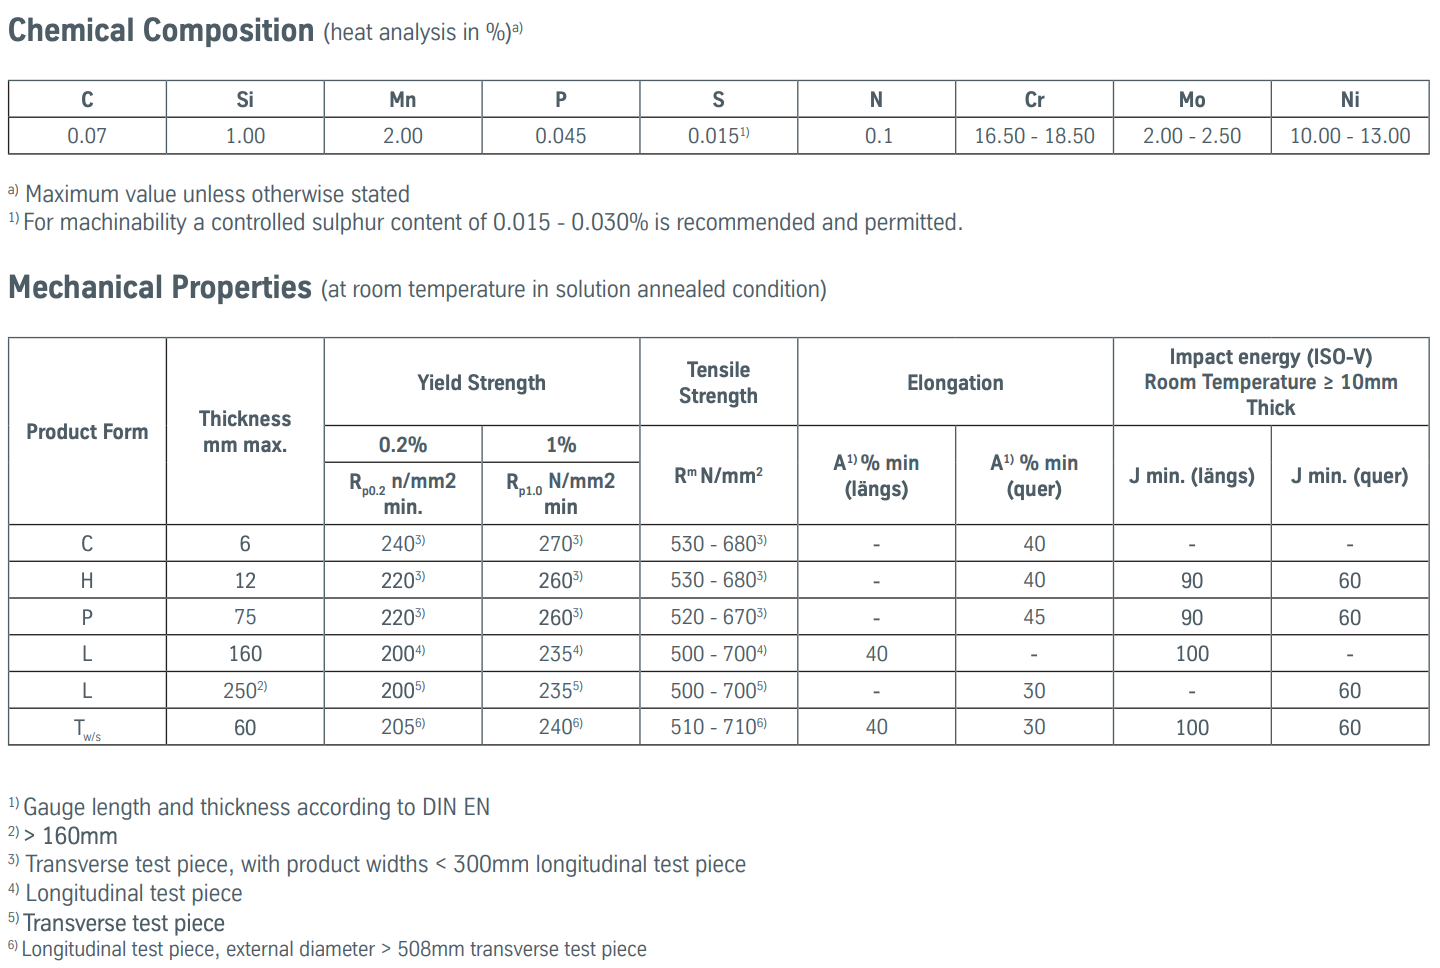 STAINLESS STEEL 304 VS 316, 스테인레스강 화학성분 및 기계적특성 비교 - 블로그